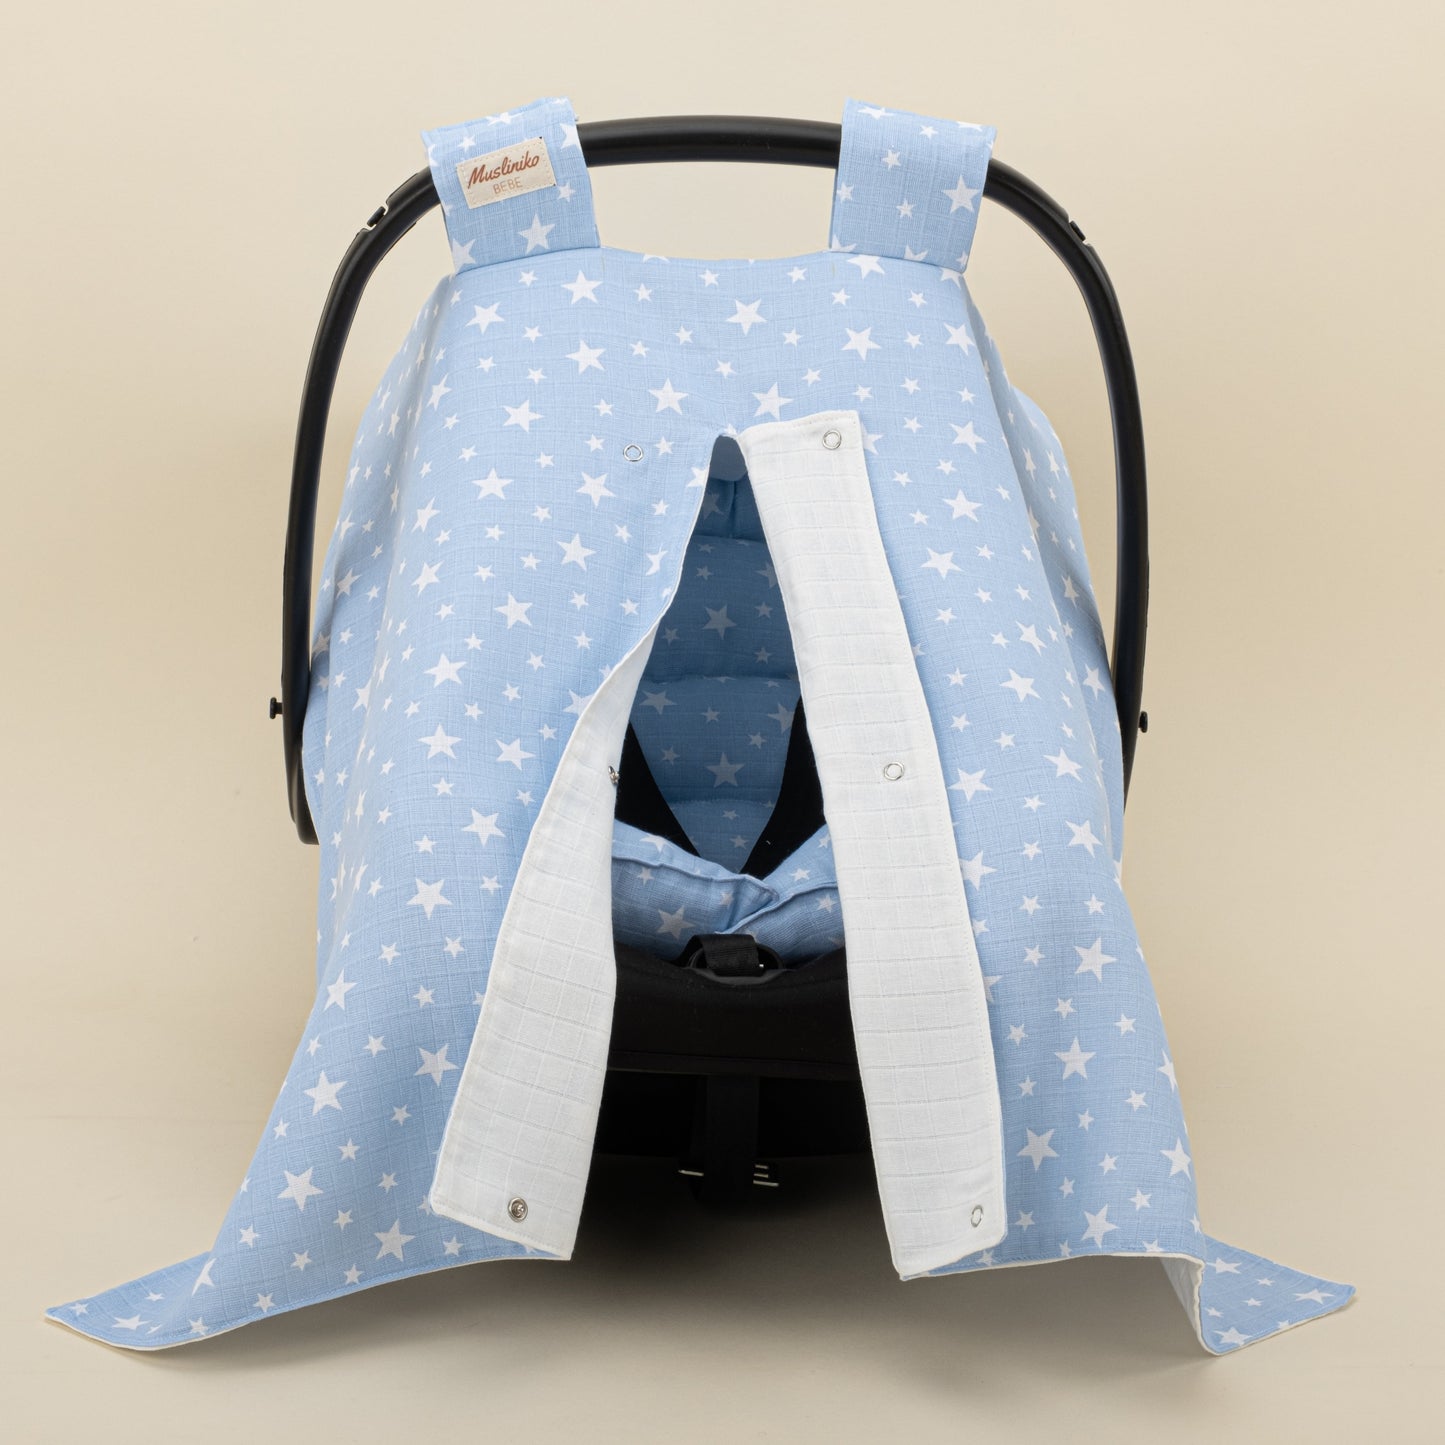 Stroller Cover Set - Double Side - White Muslin - Blue Little Stars